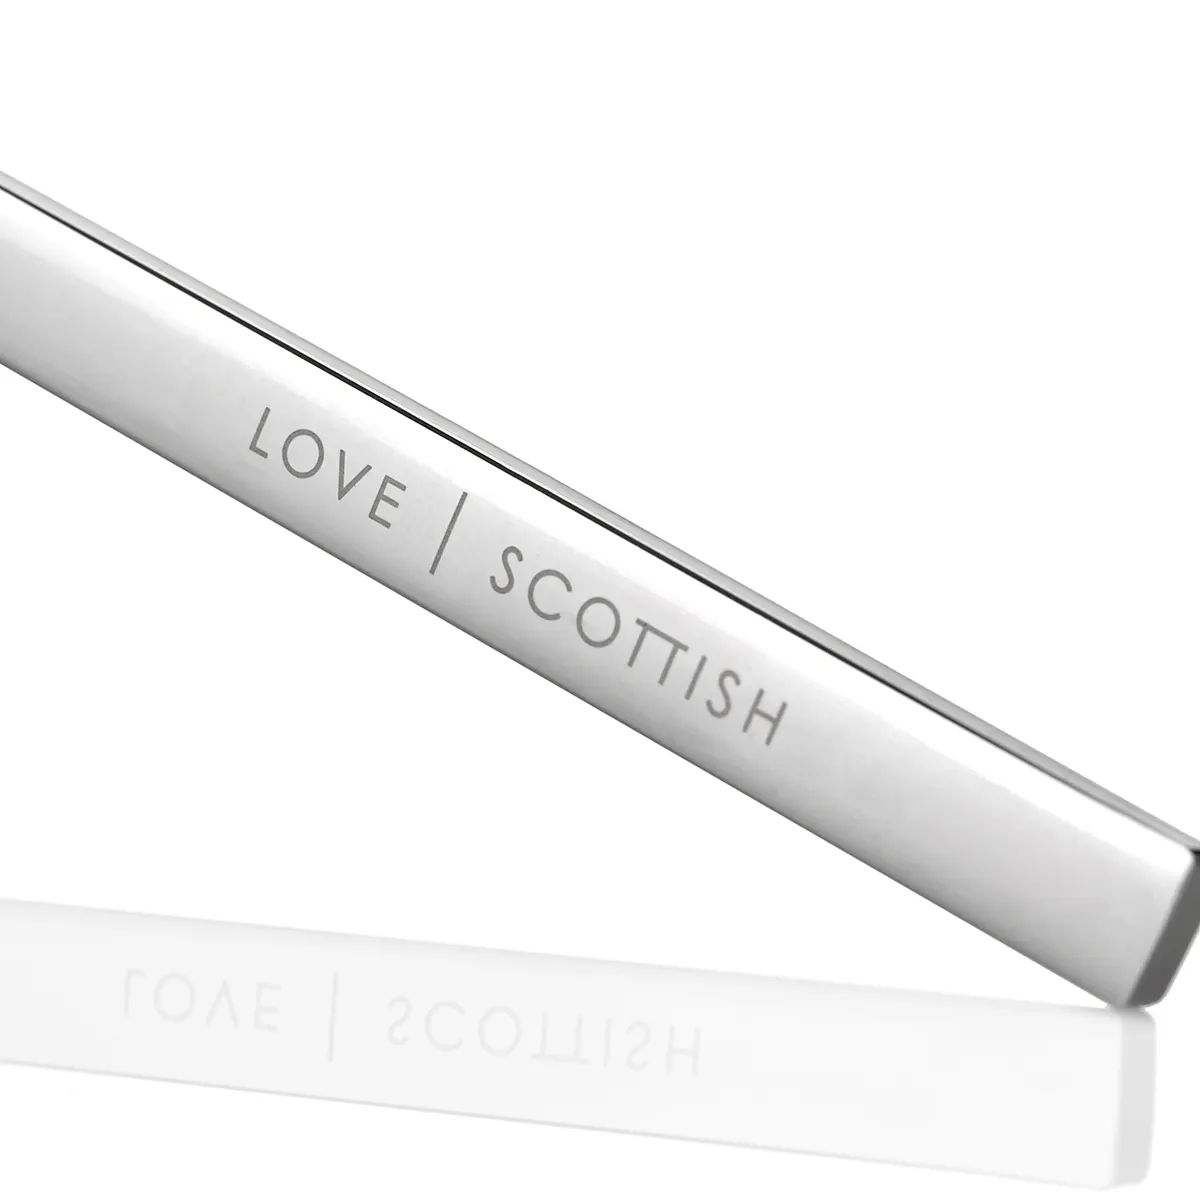 Love Scottish - Kerzenlöscher aus Edelstahl